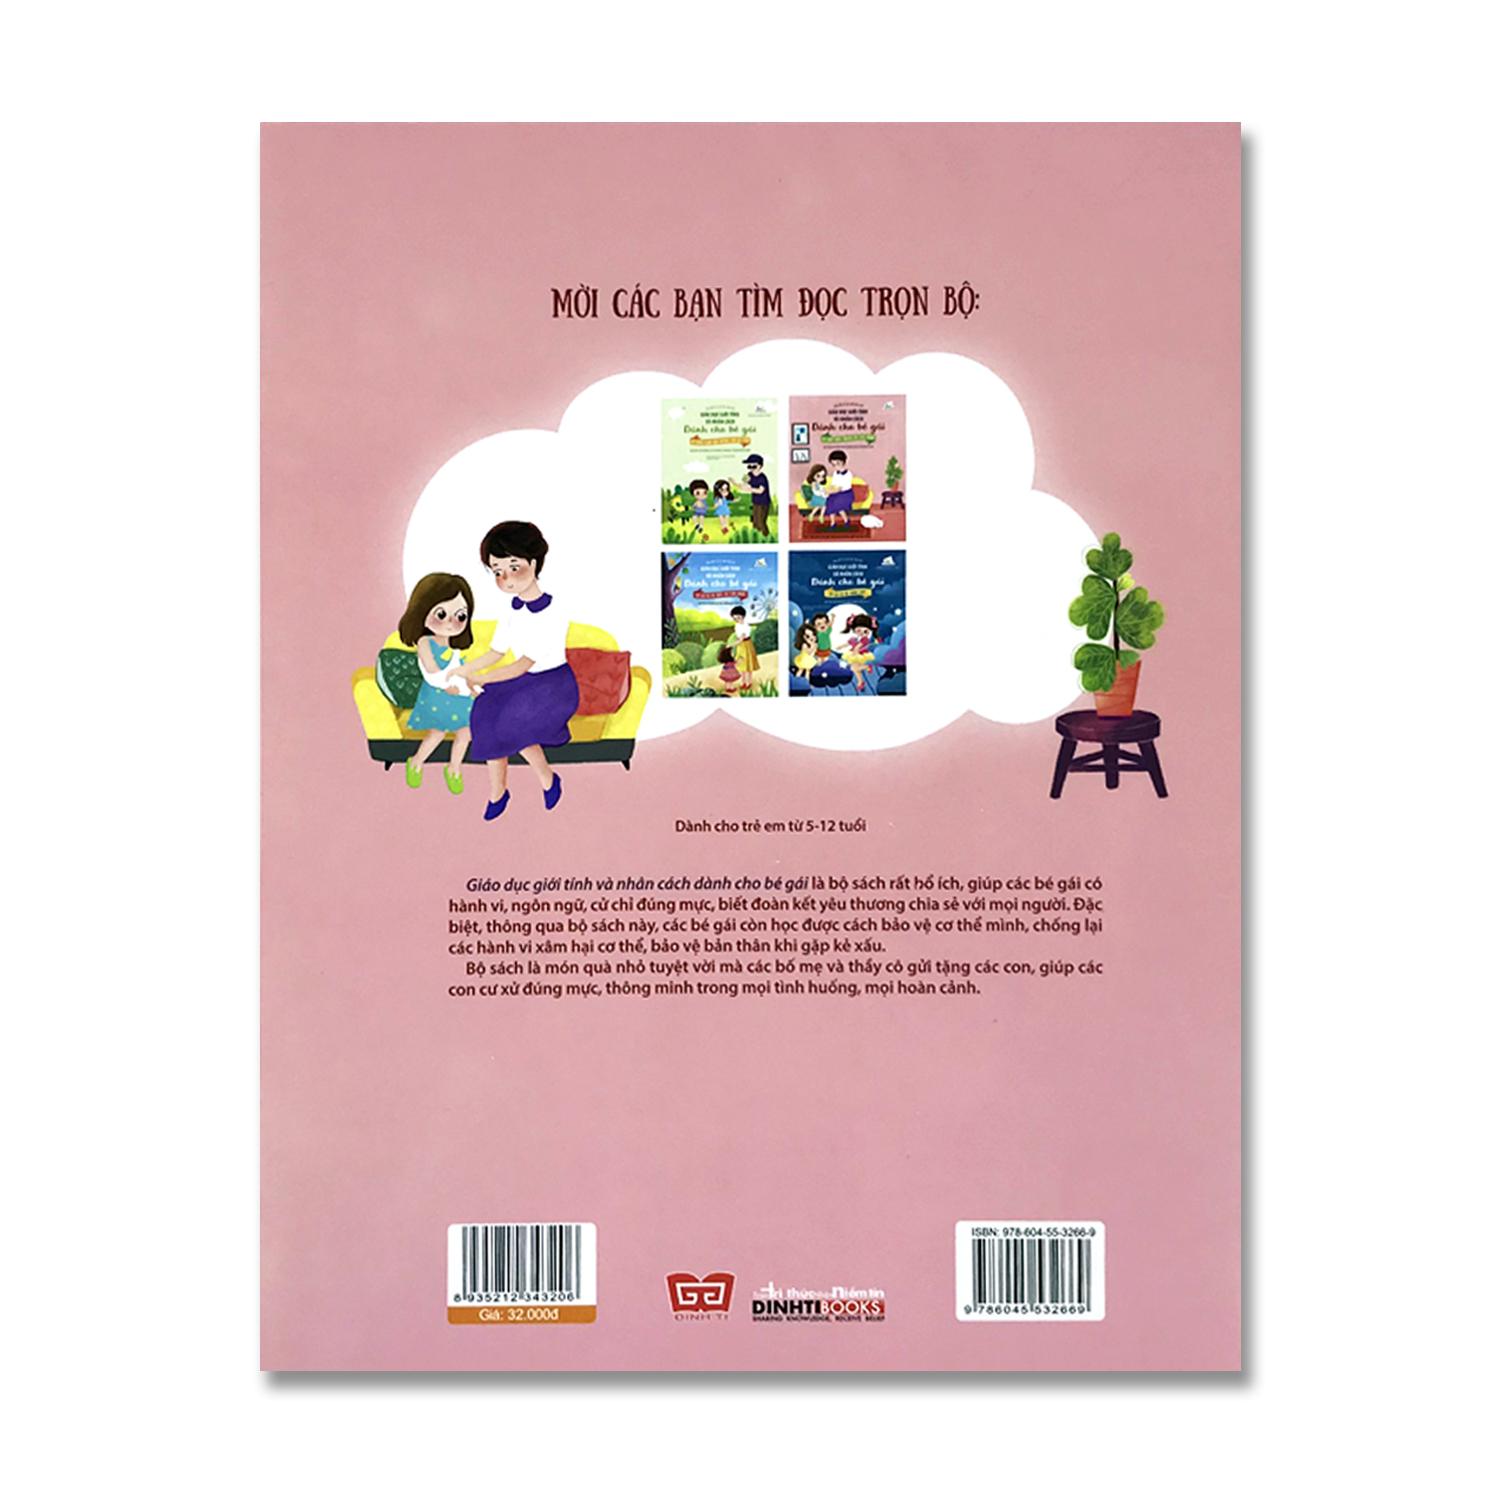 Sách Giáo dục giới tính và nhân cách dành cho bé gái - Mọi điều bé gái cần phải biết (Bộ 4 quyển, lẻ tùy chọn)